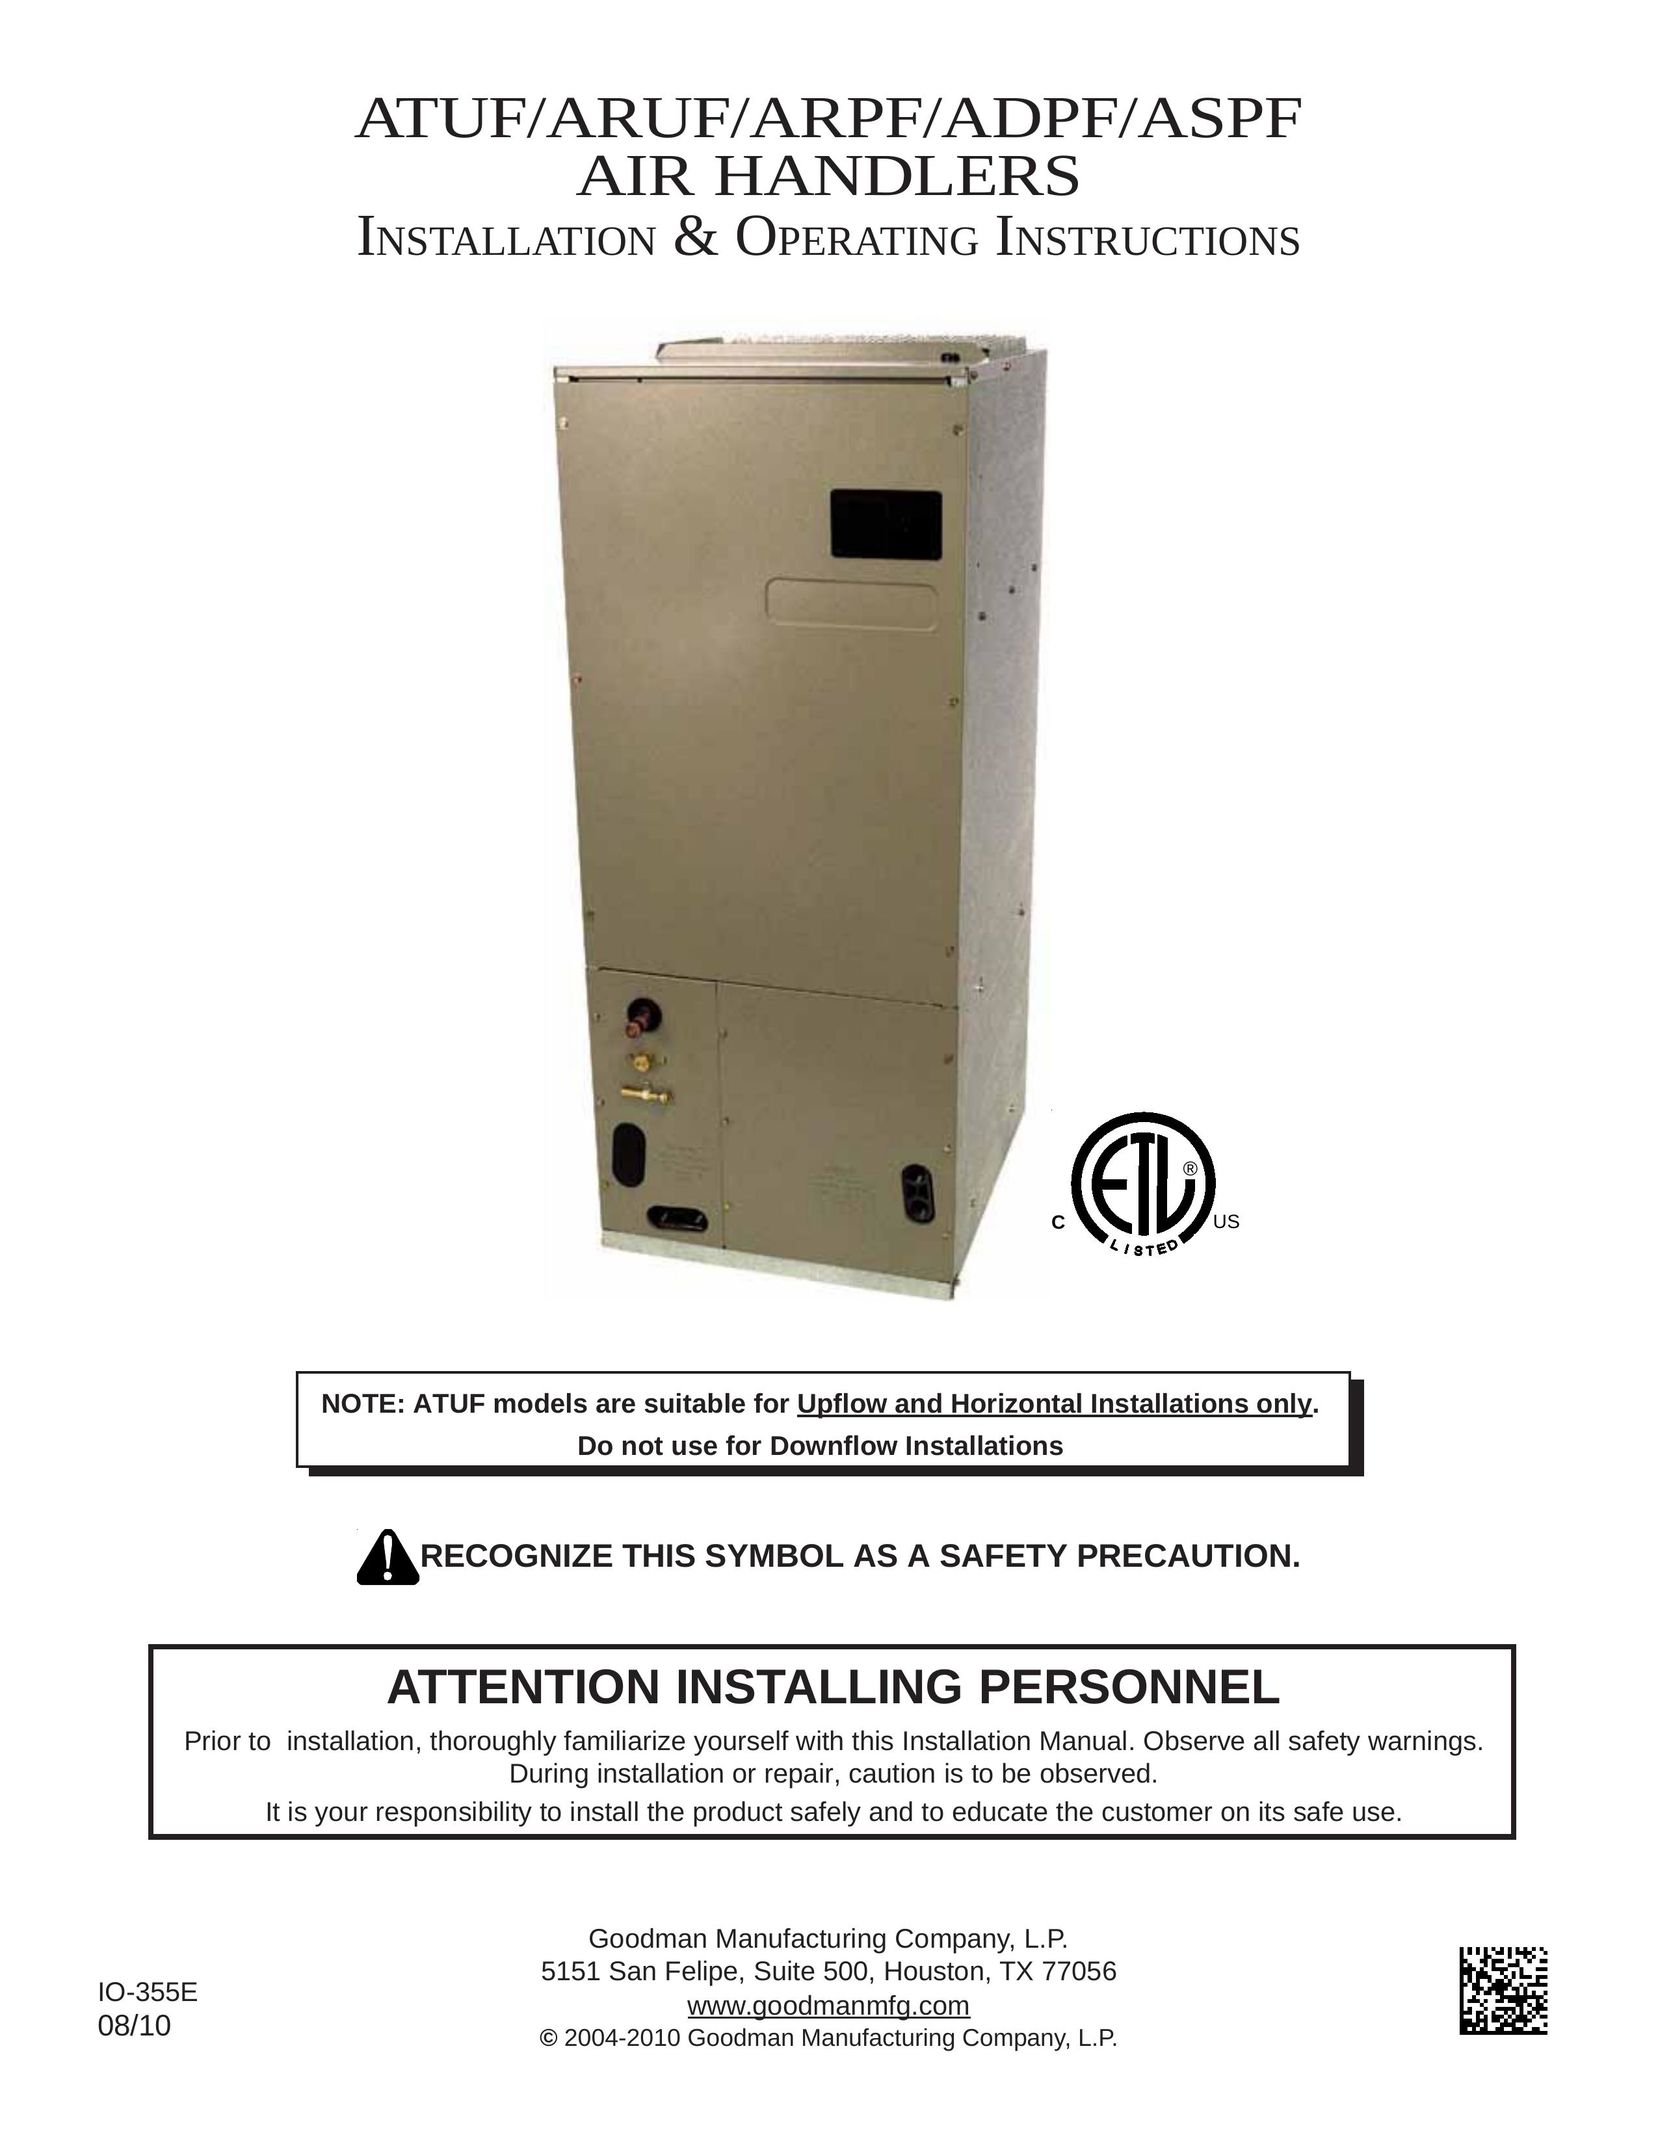 Goodman Mfg ADPF Air Conditioner User Manual